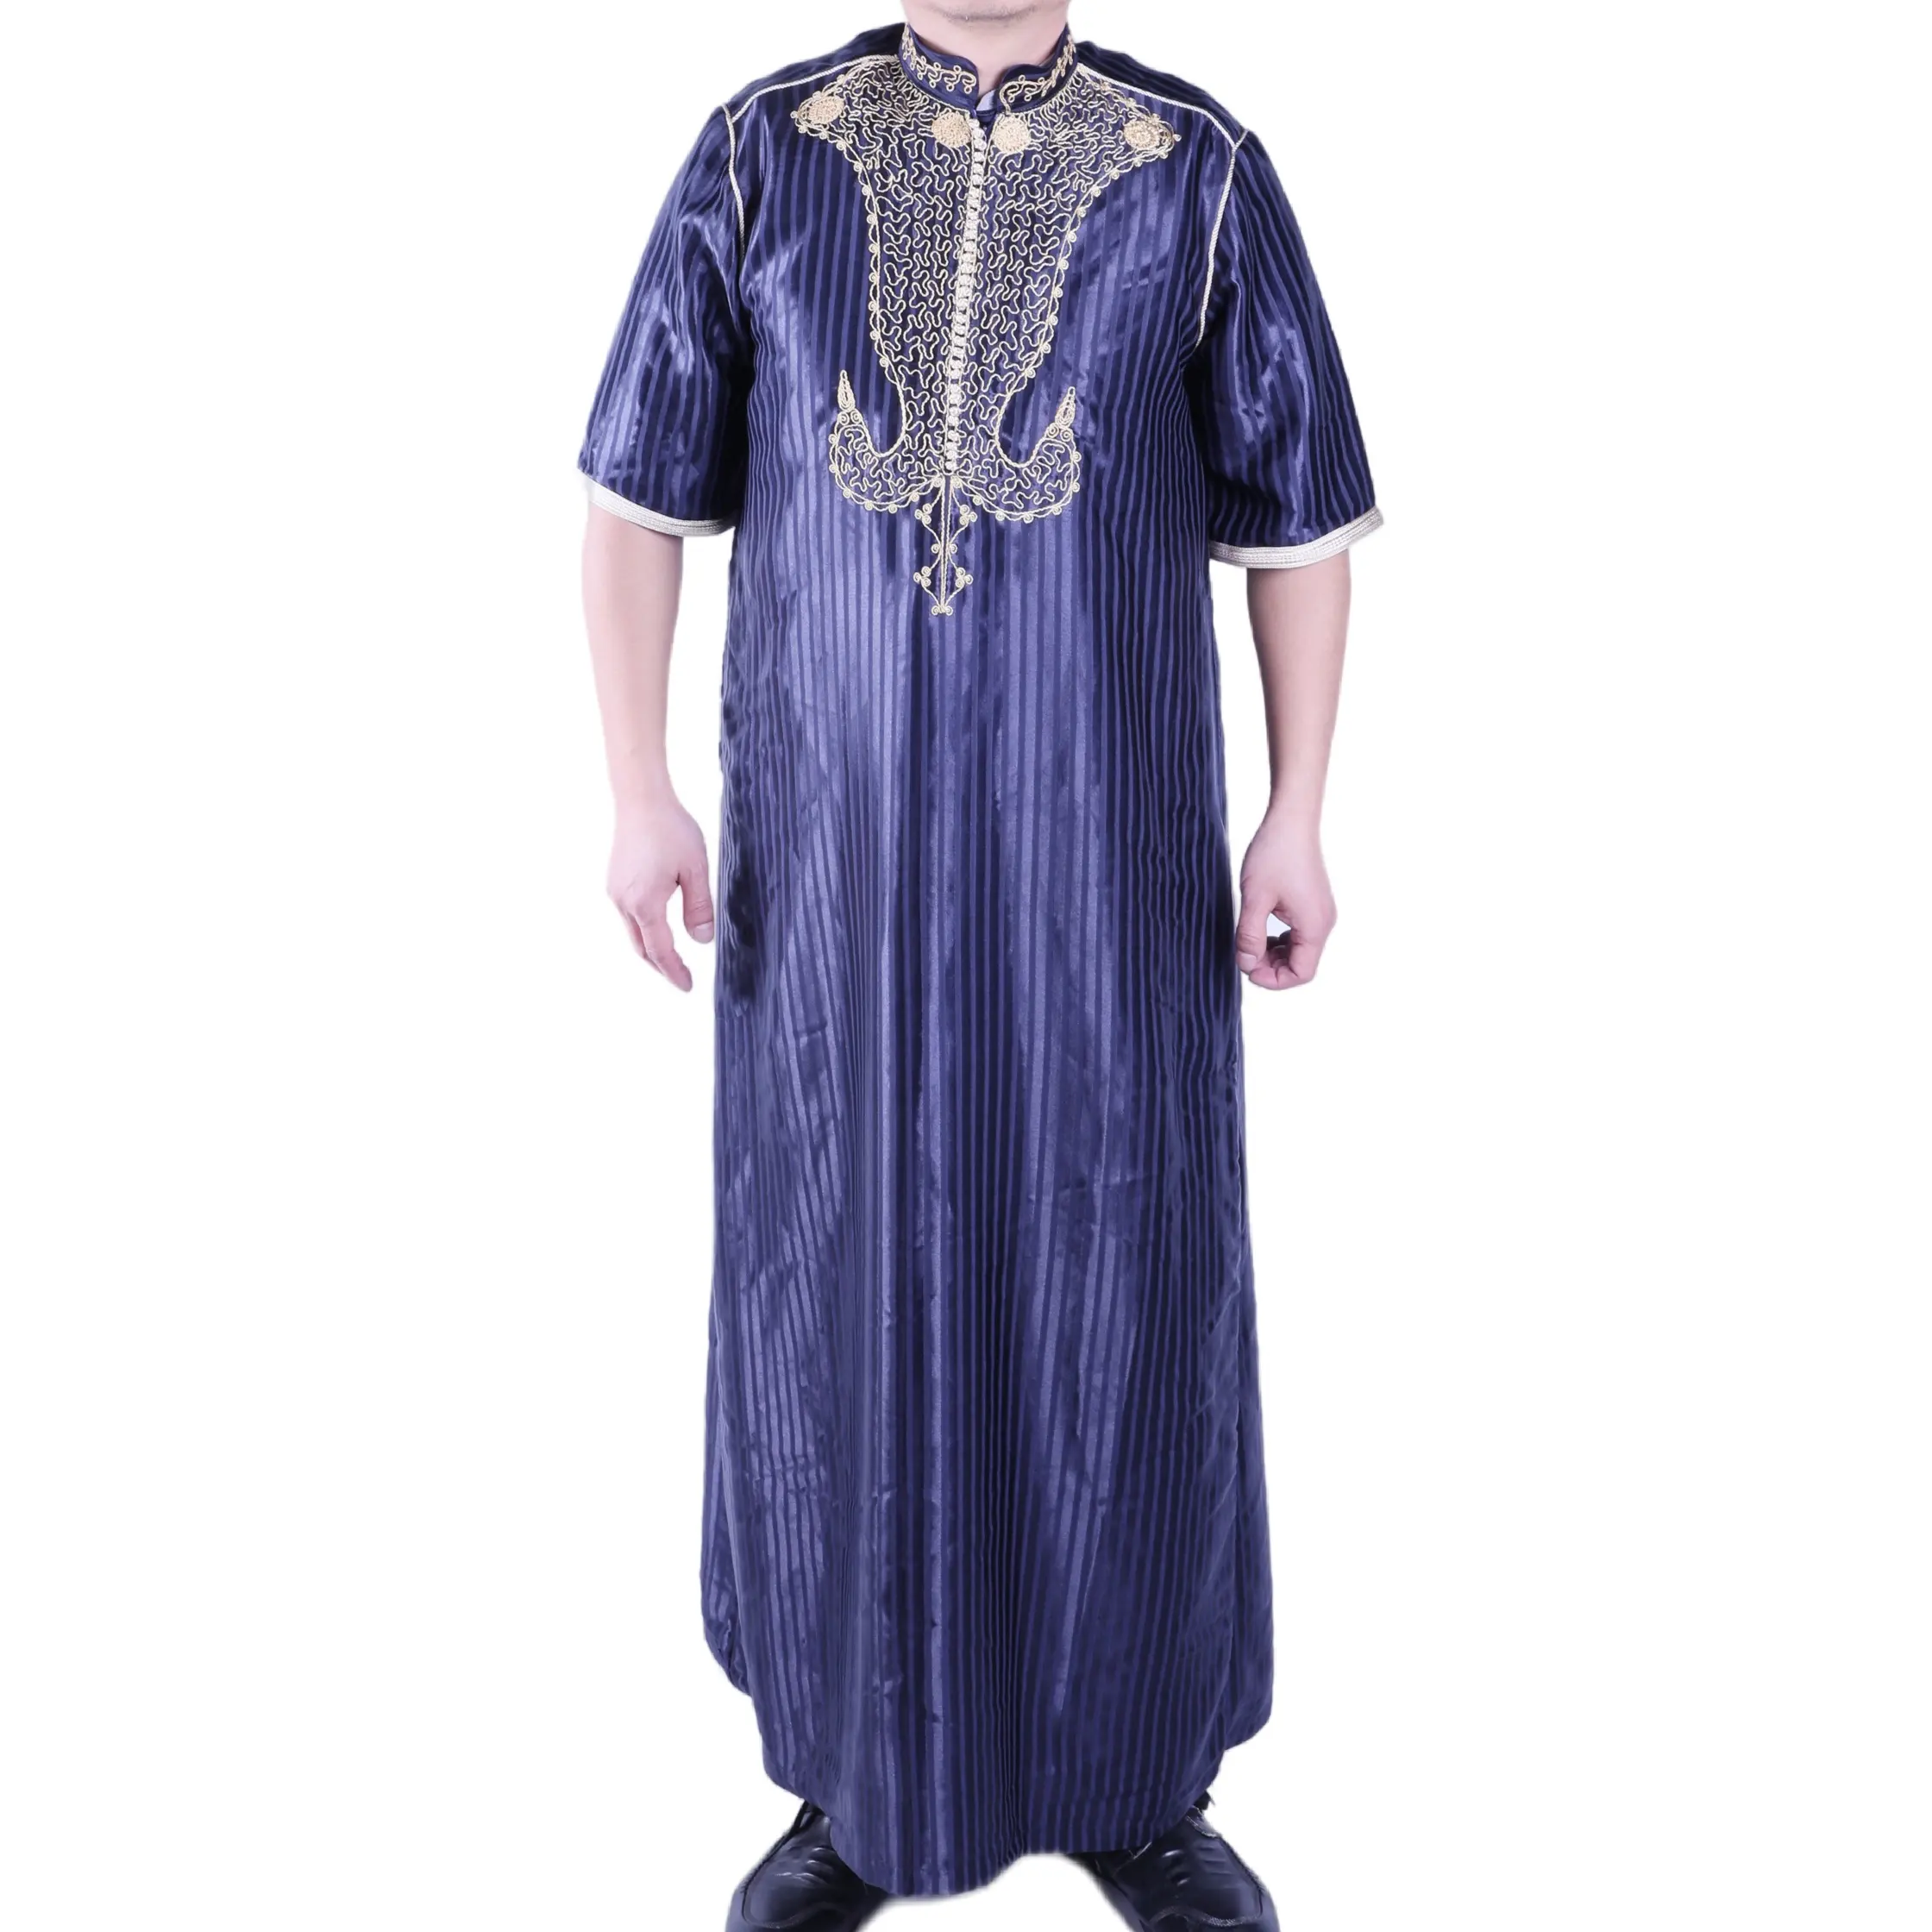 رداء عربي بتصميمات مزخرفة ملابس صلاة للمسلمين فستان أفغاني عباية دبي التركية